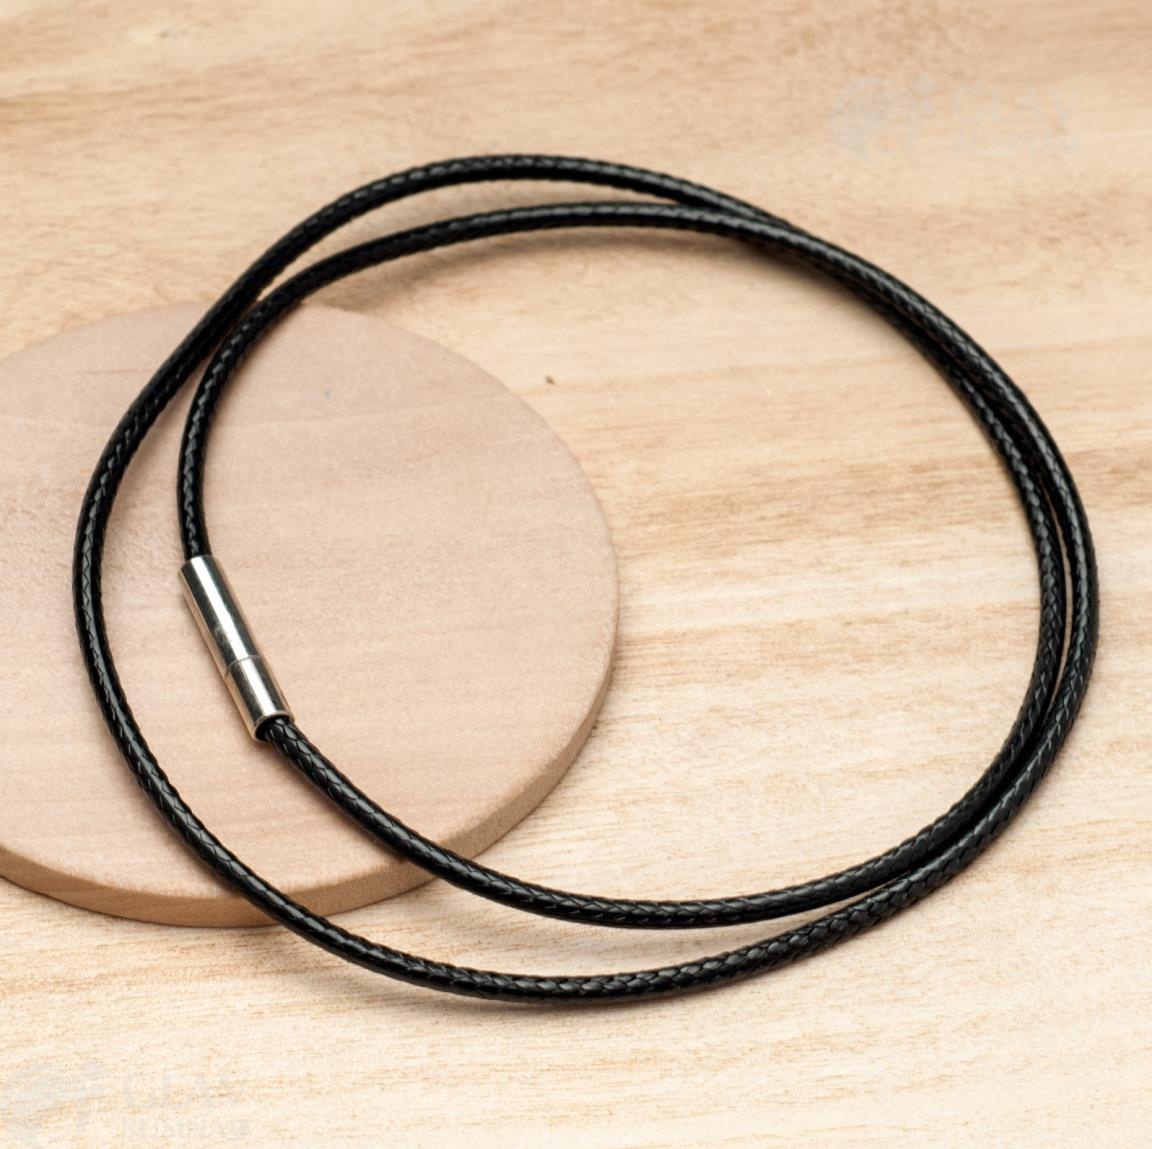 Черный вощеный полиэстровый шнур для кулона, 45см, похож на кожу, с замочком из хирургической стали.